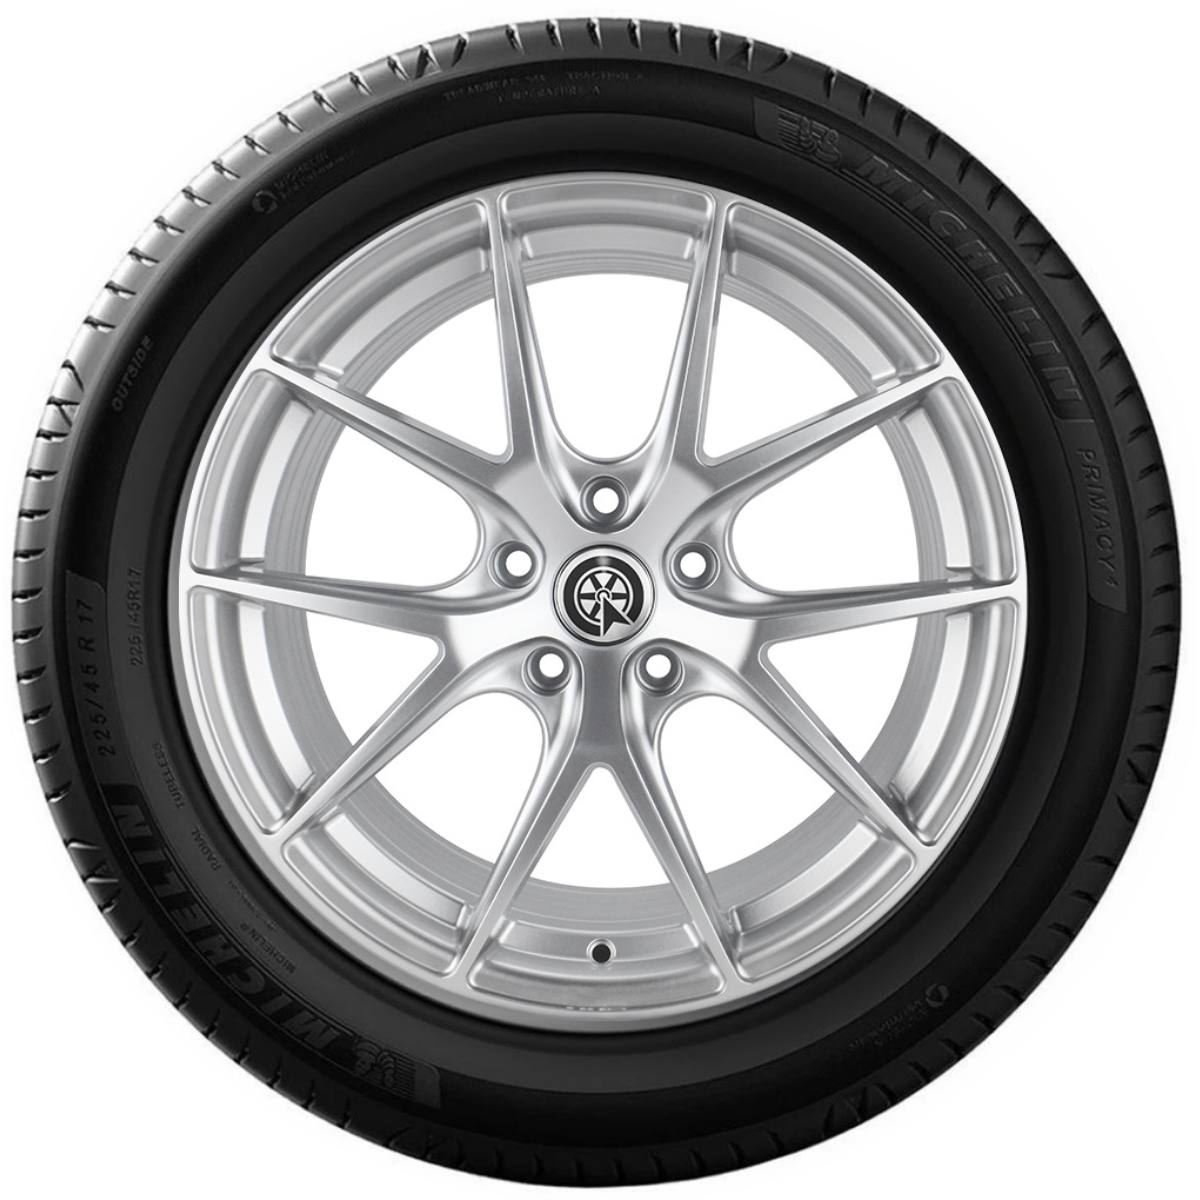 Neumático Michelin 225/45 R17 94W Primacy 4+, Sucursal Chacabuco